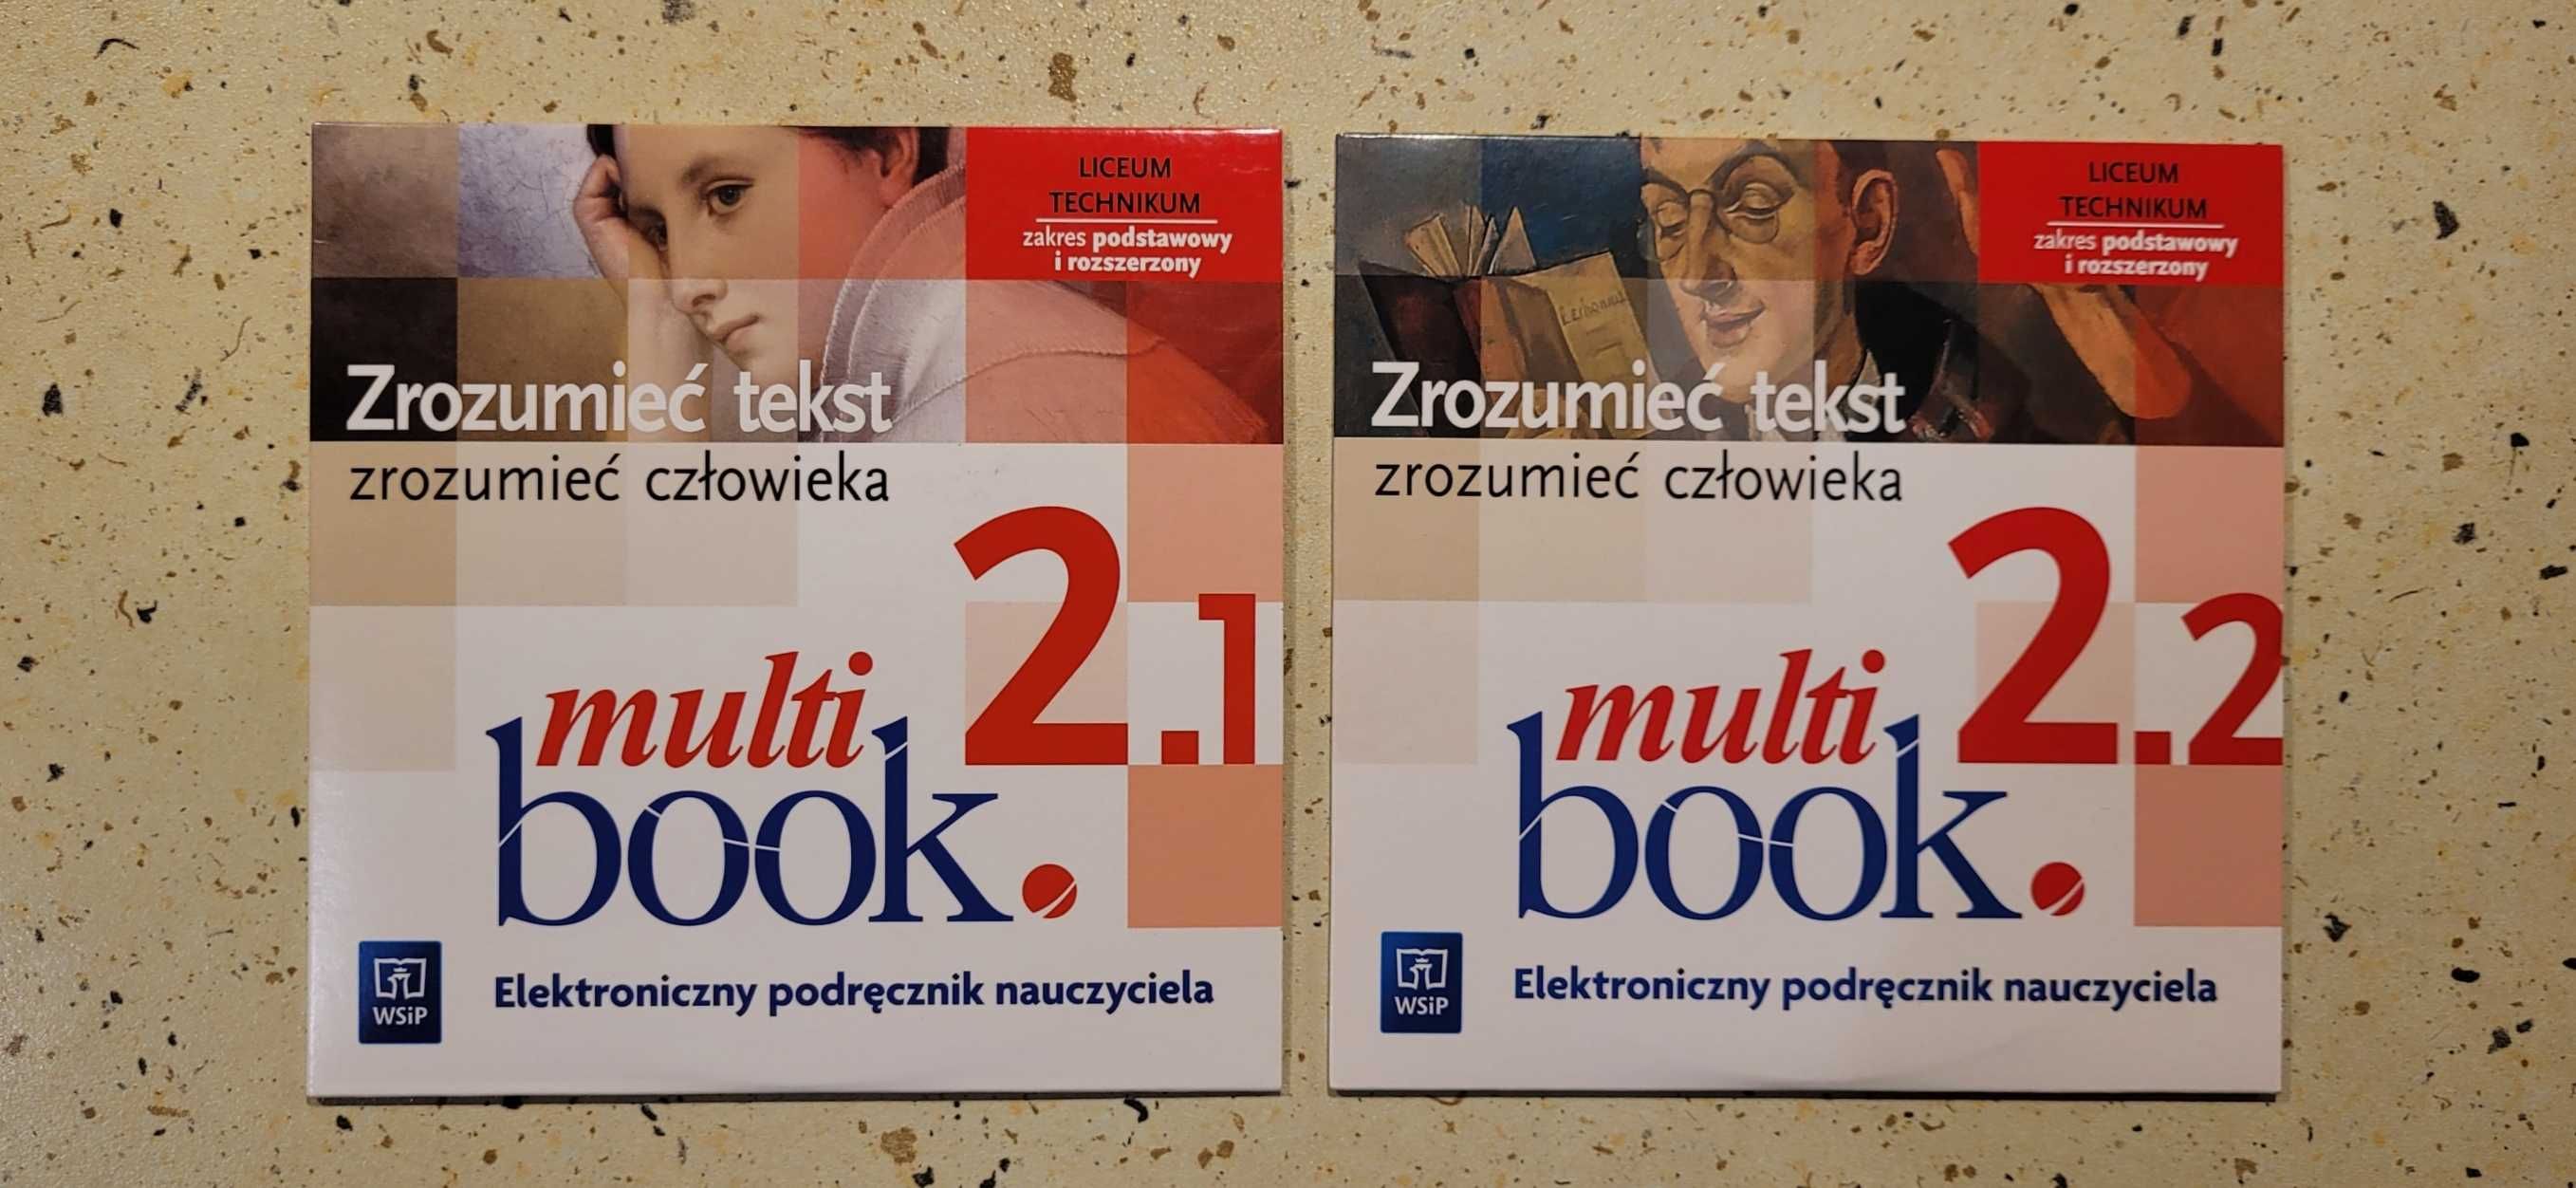 Multi book - elektroniczny podręcznik nauczyciela do języka polskiego